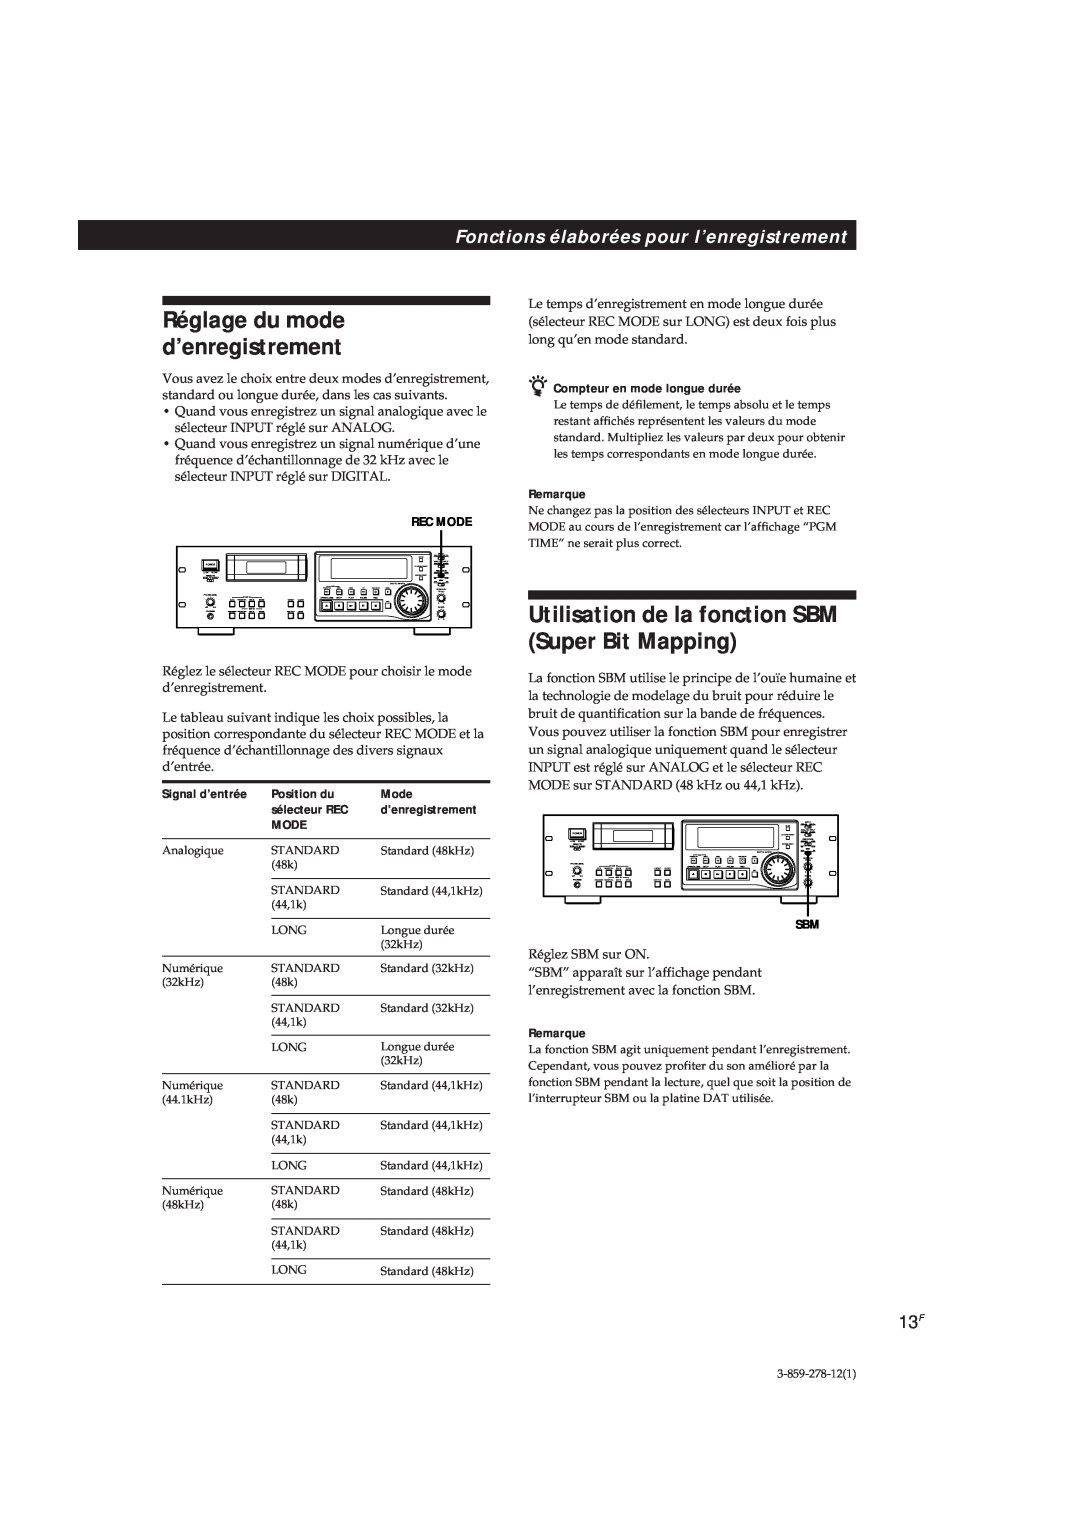 Sony PCM-R700 Utilisation de la fonction SBM Super Bit Mapping, Fonctions élaborées pour l’enregistrement, Signal d’entrée 